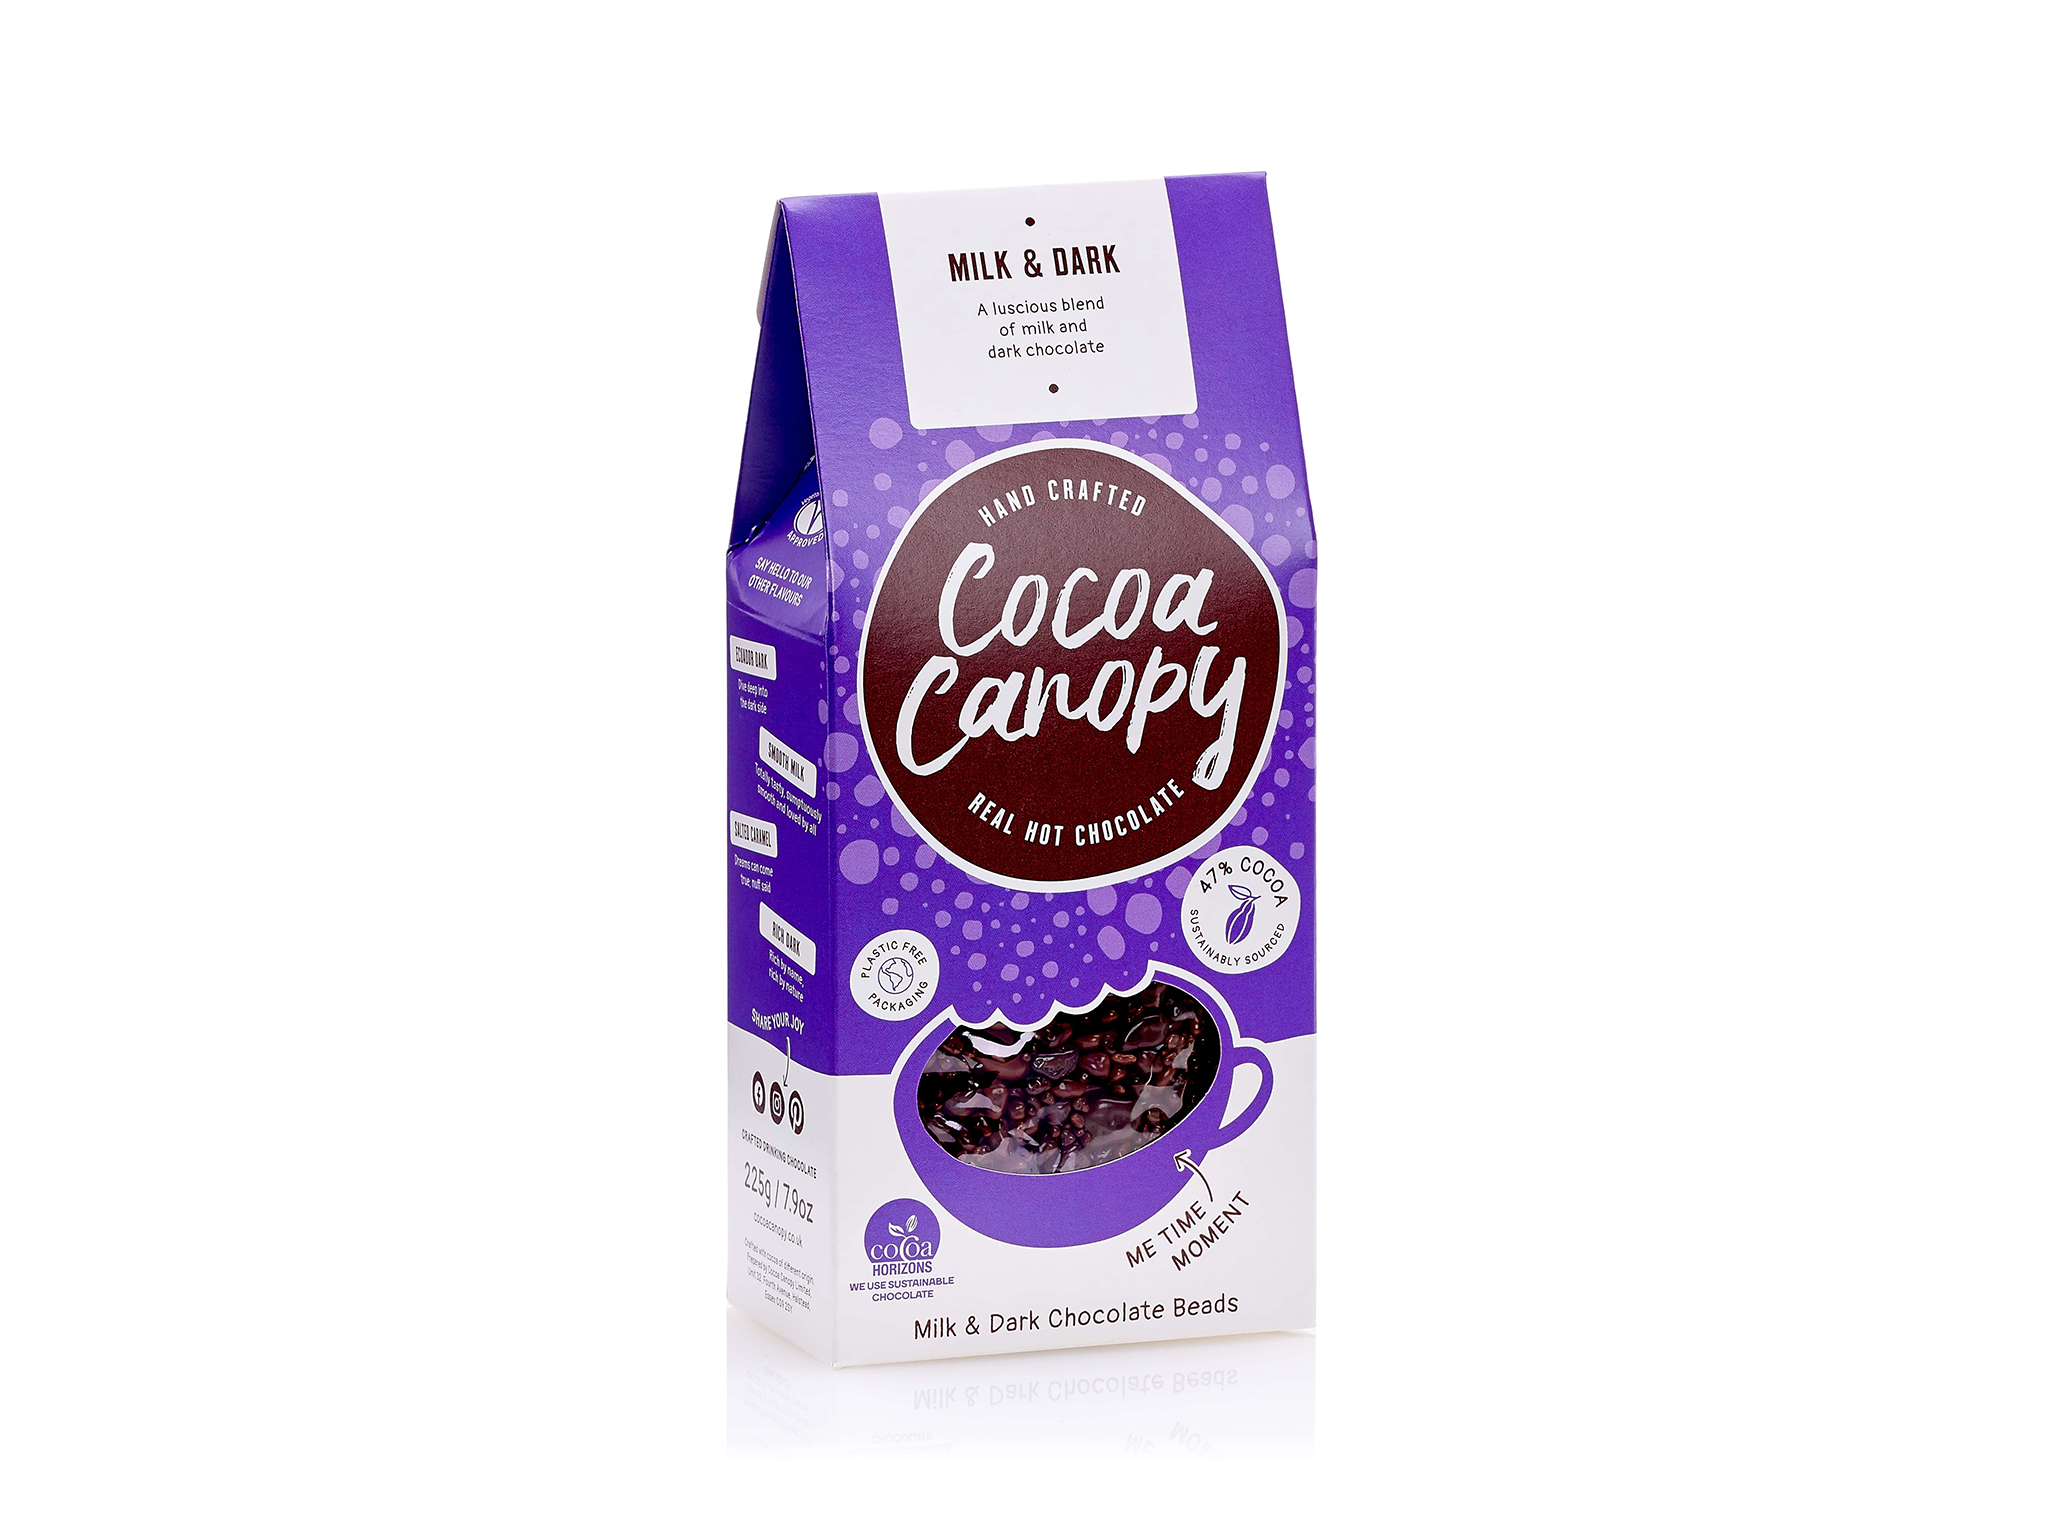 Cocoa Canopy milk & dark